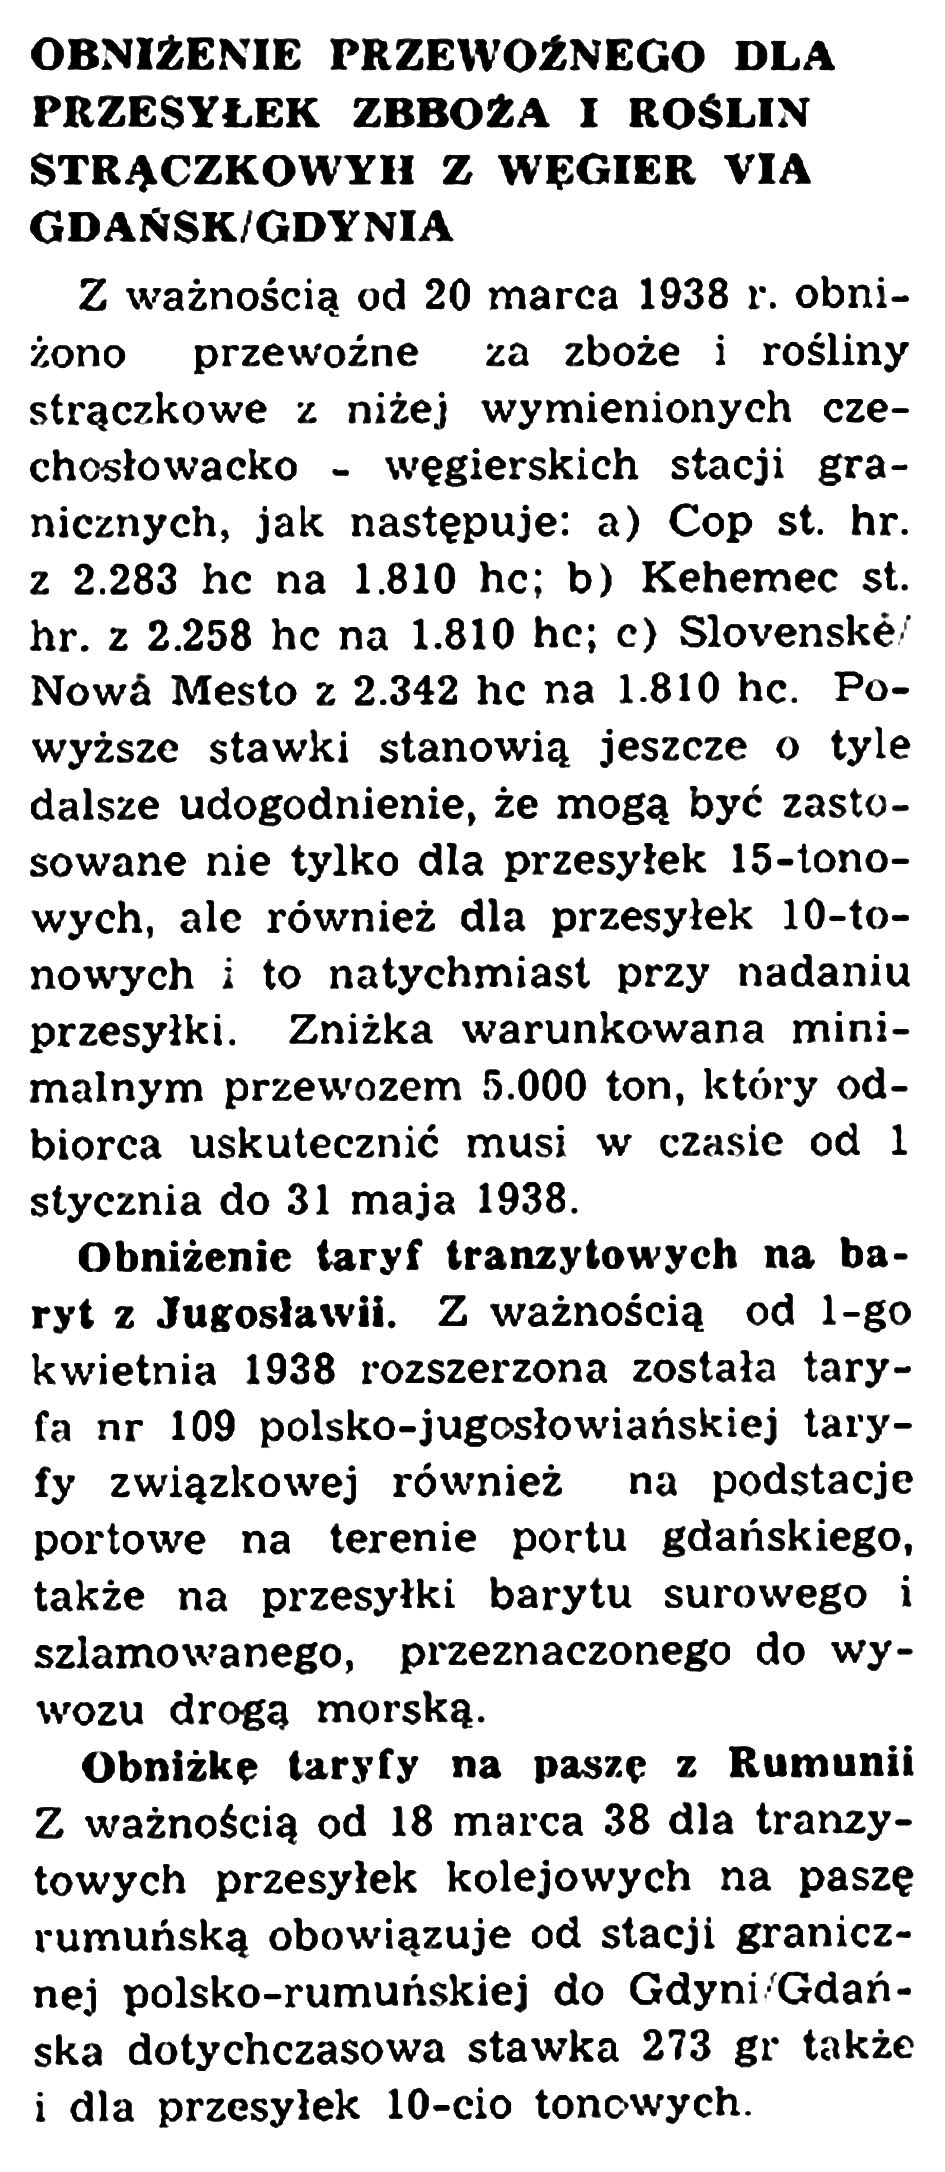 Obniżenie przewoźnego dla przesyłek zboża i roślin strączkowych z Węgier via Gdańsk/Gdynia